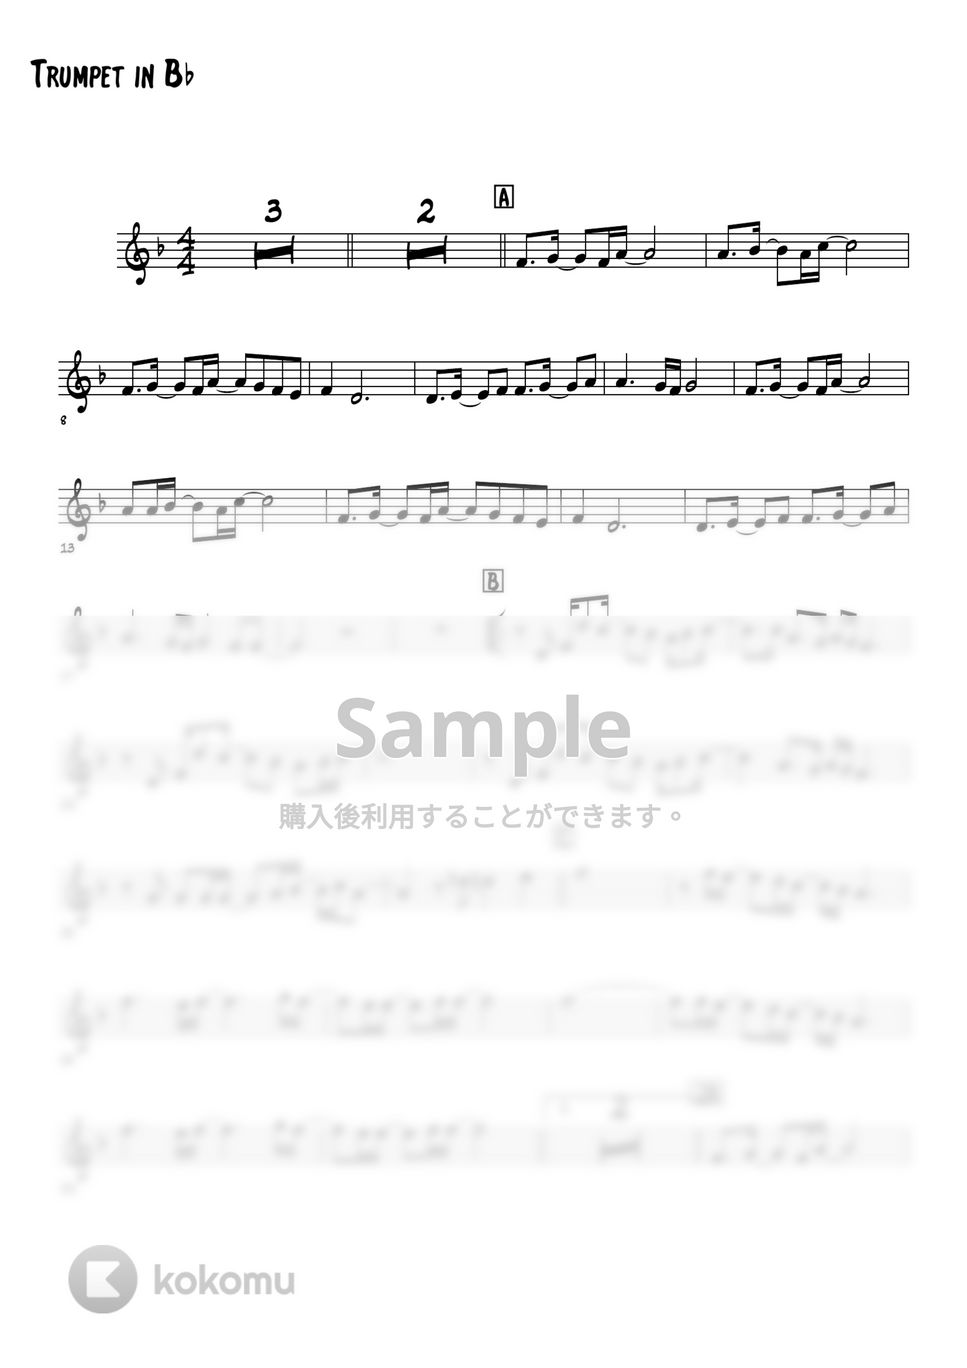 草野正宗(スピッツ) - 楓 (トランペットメロディー楽譜) by 高田将利